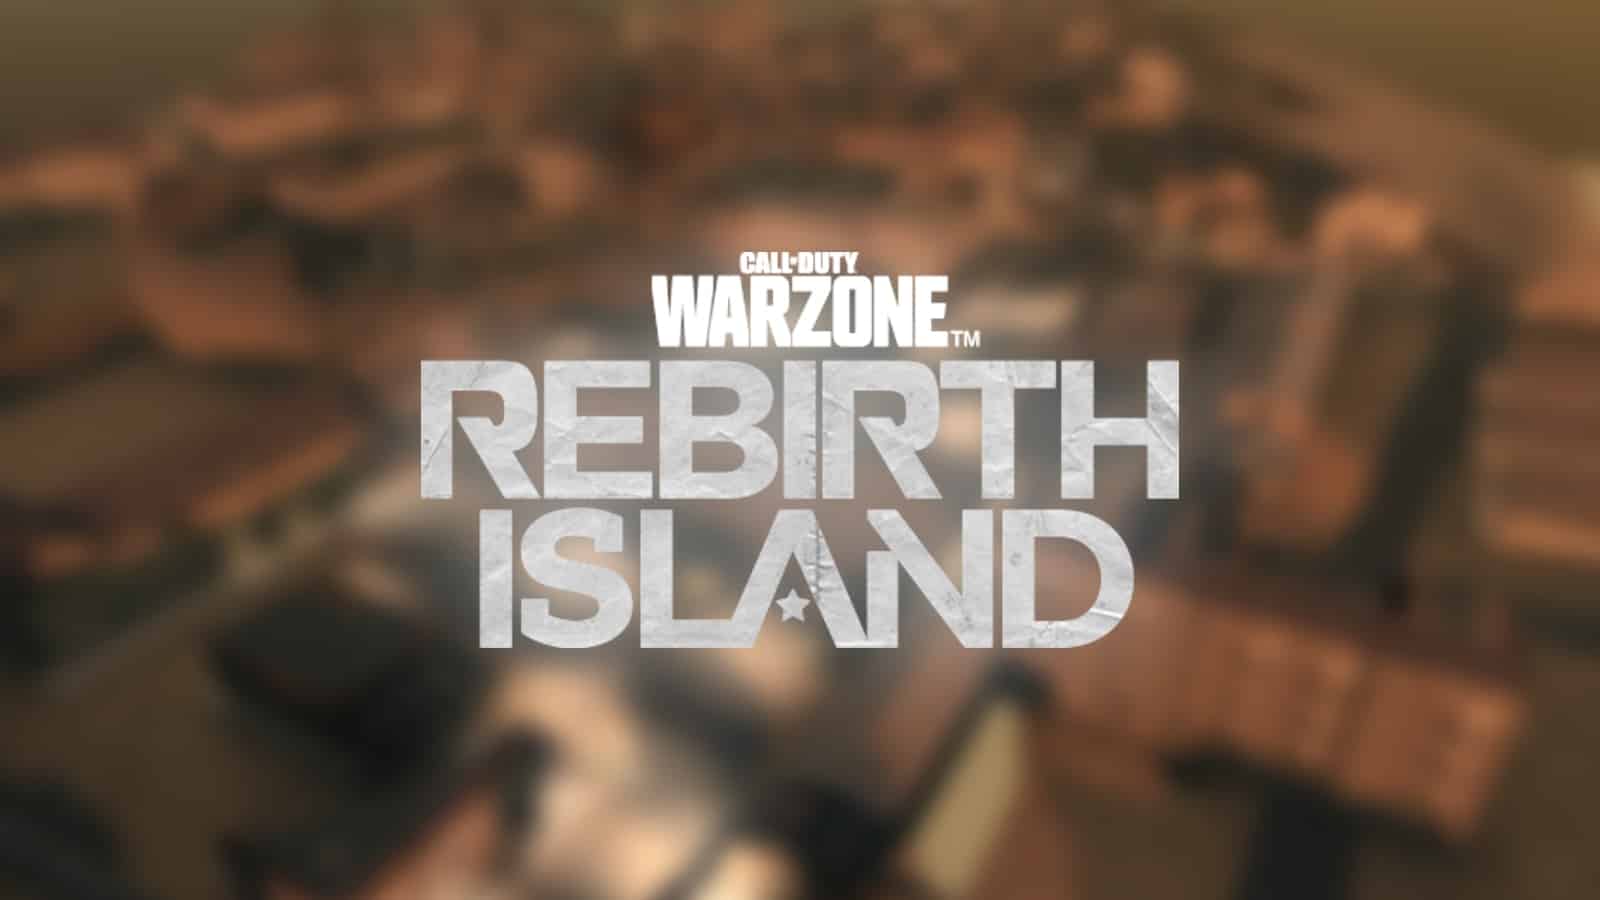 Warzone rebirth island private lobbies